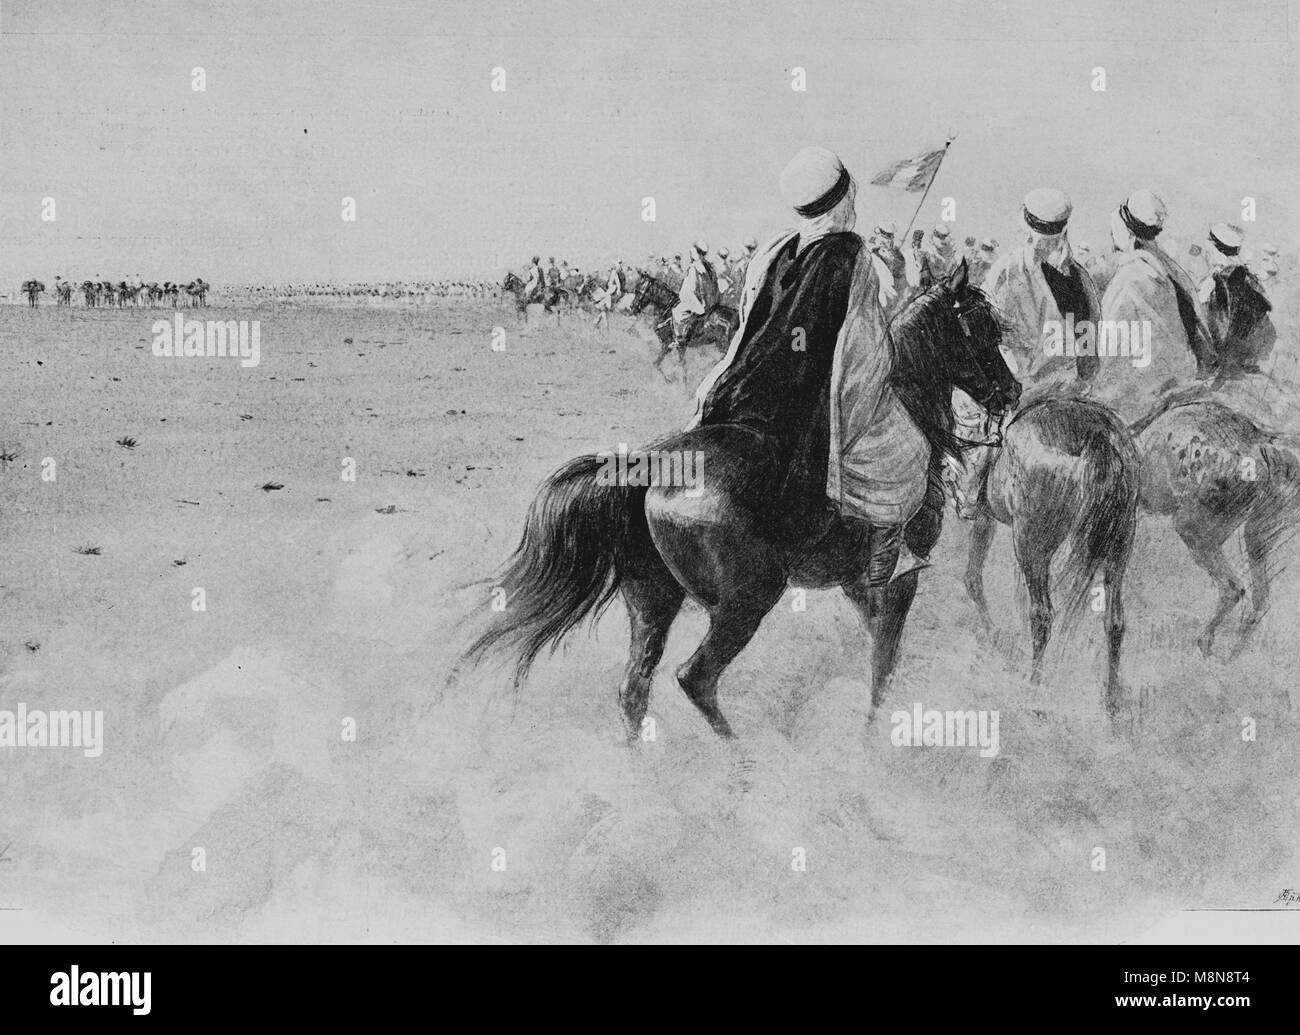 Expedición Foureau-Lamy francesa en el Chad, en 1900, la caravana de la expedición, imagen del semanario francés l'Illustration, 9 de septiembre de 1900 Foto de stock